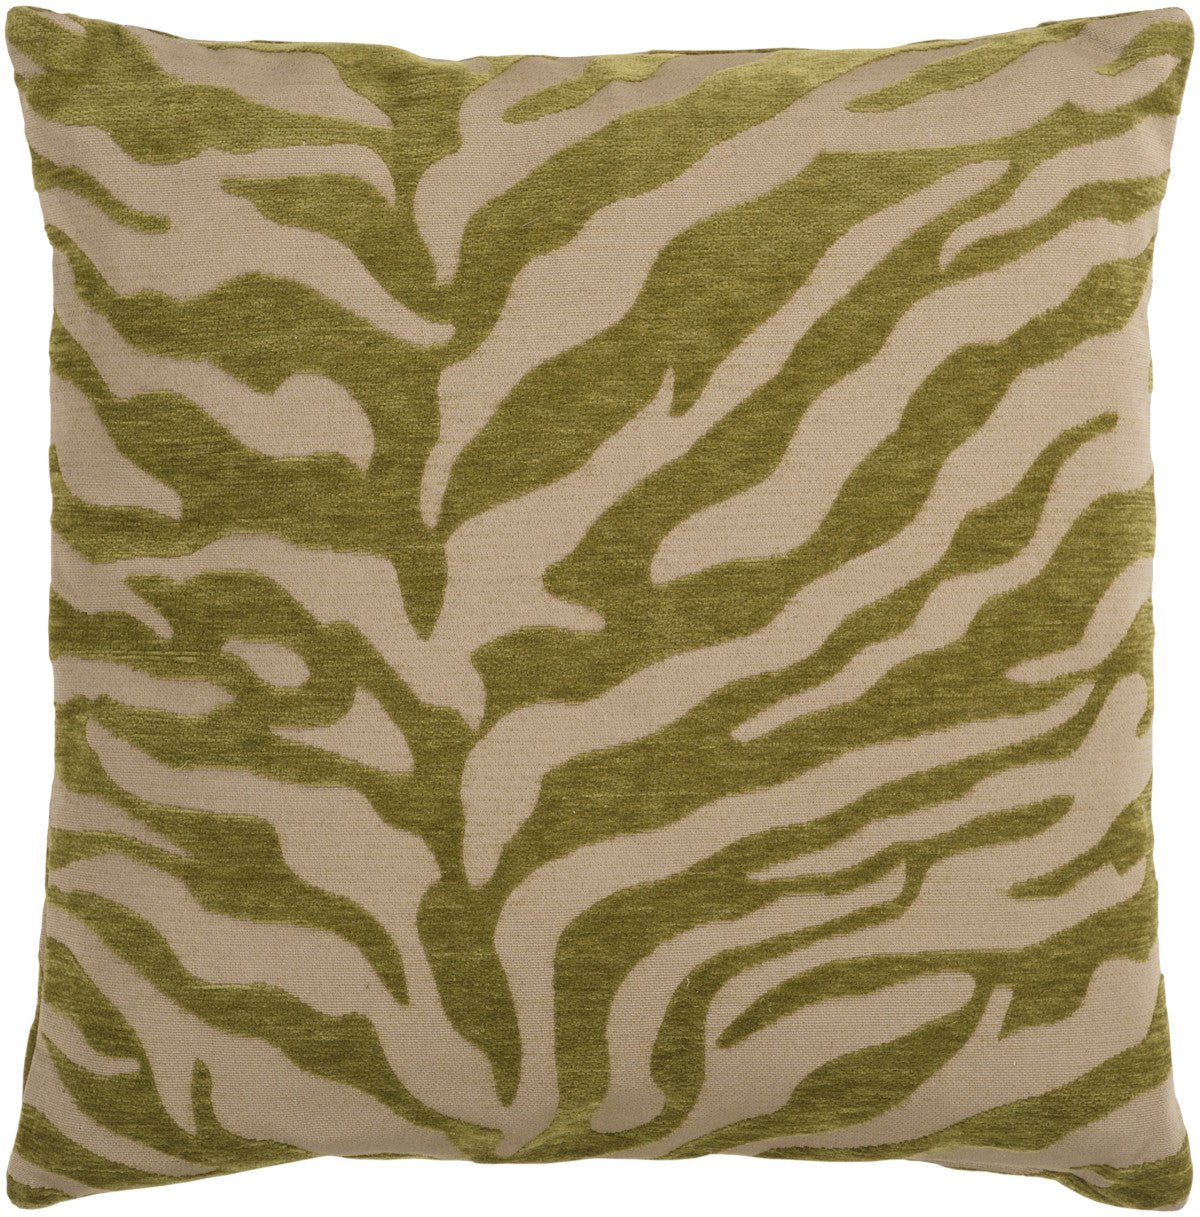 Surya Velvet Zebra Eye-catching Patterned JS-029 Pillow